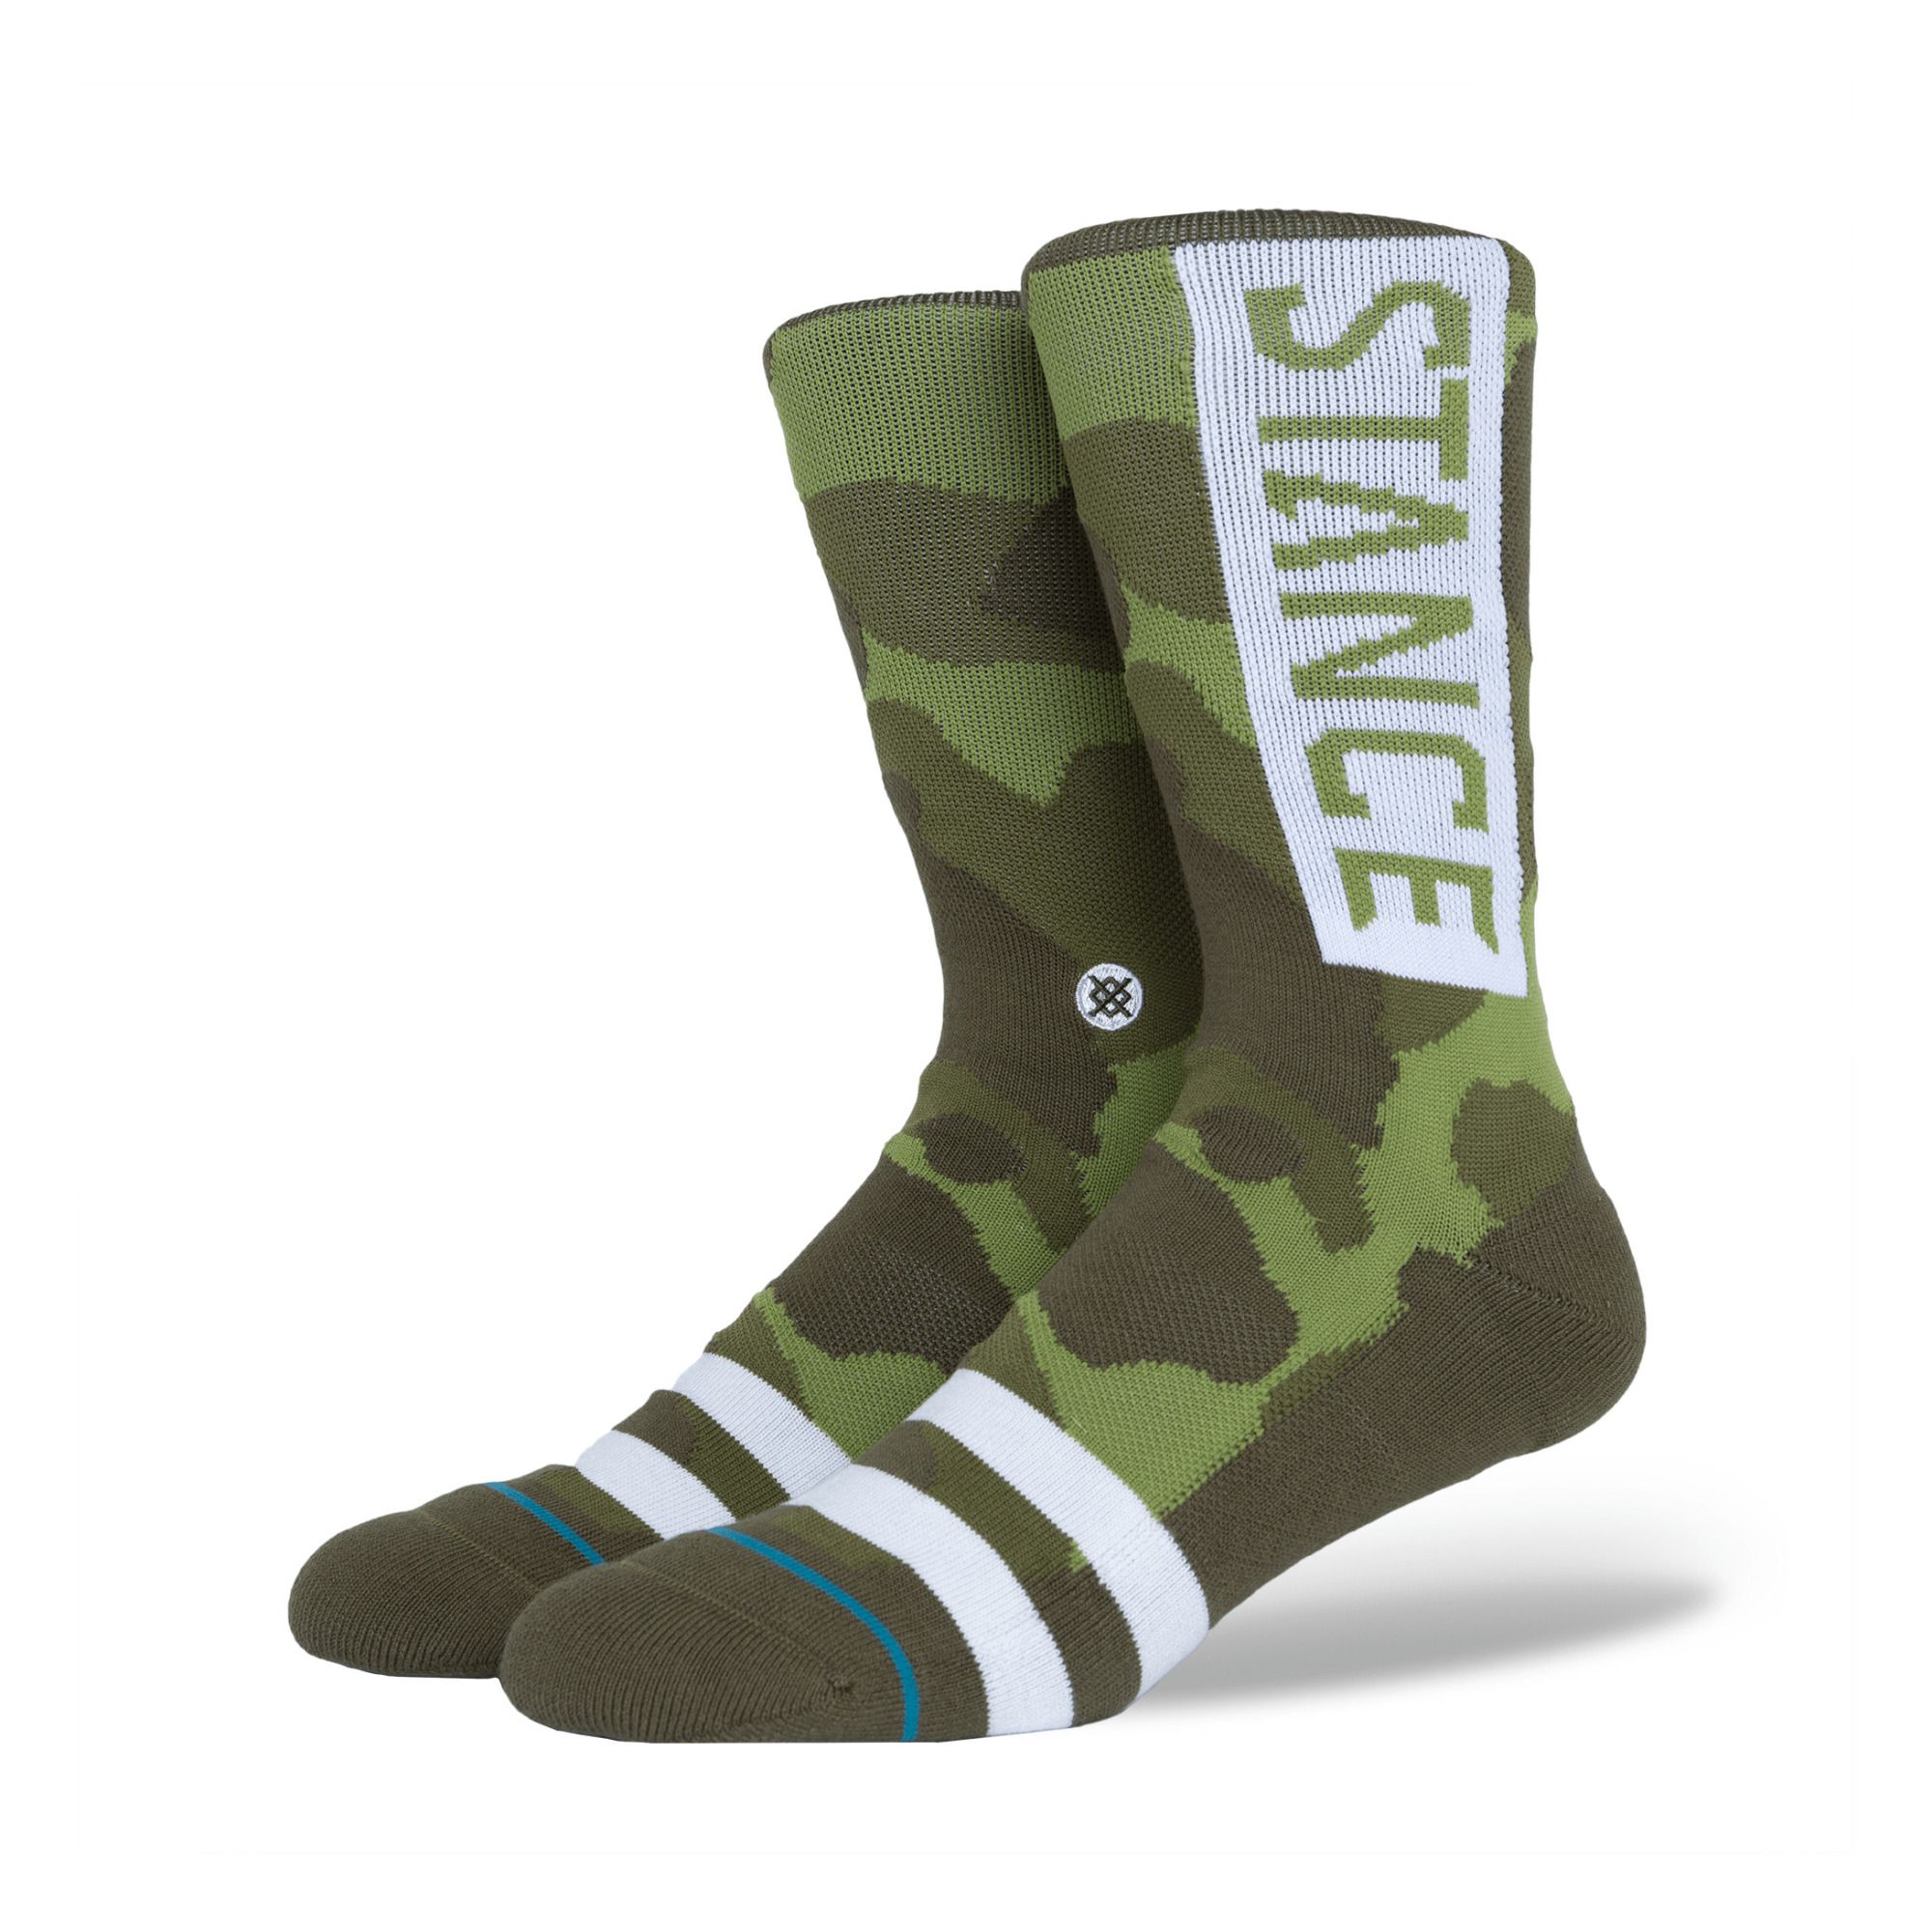 Stance Socks - Chaussettes OG - Homme - Vert kaki